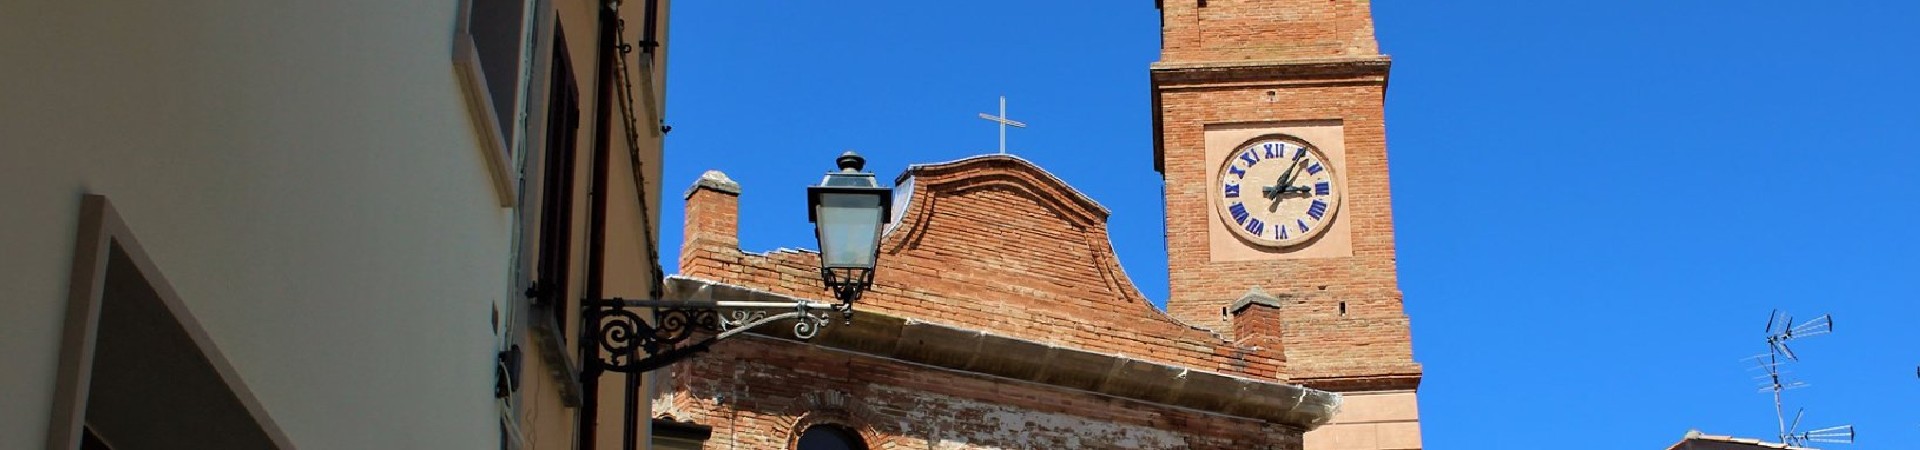 Visit-Sogliano-Scopri-Sogliano-Arte-Cultura-Artigianato-Chiese-Pievi-Abbazie-Monasteri-Chiesa-Suffragio-Torre-Civica-Banner (1)